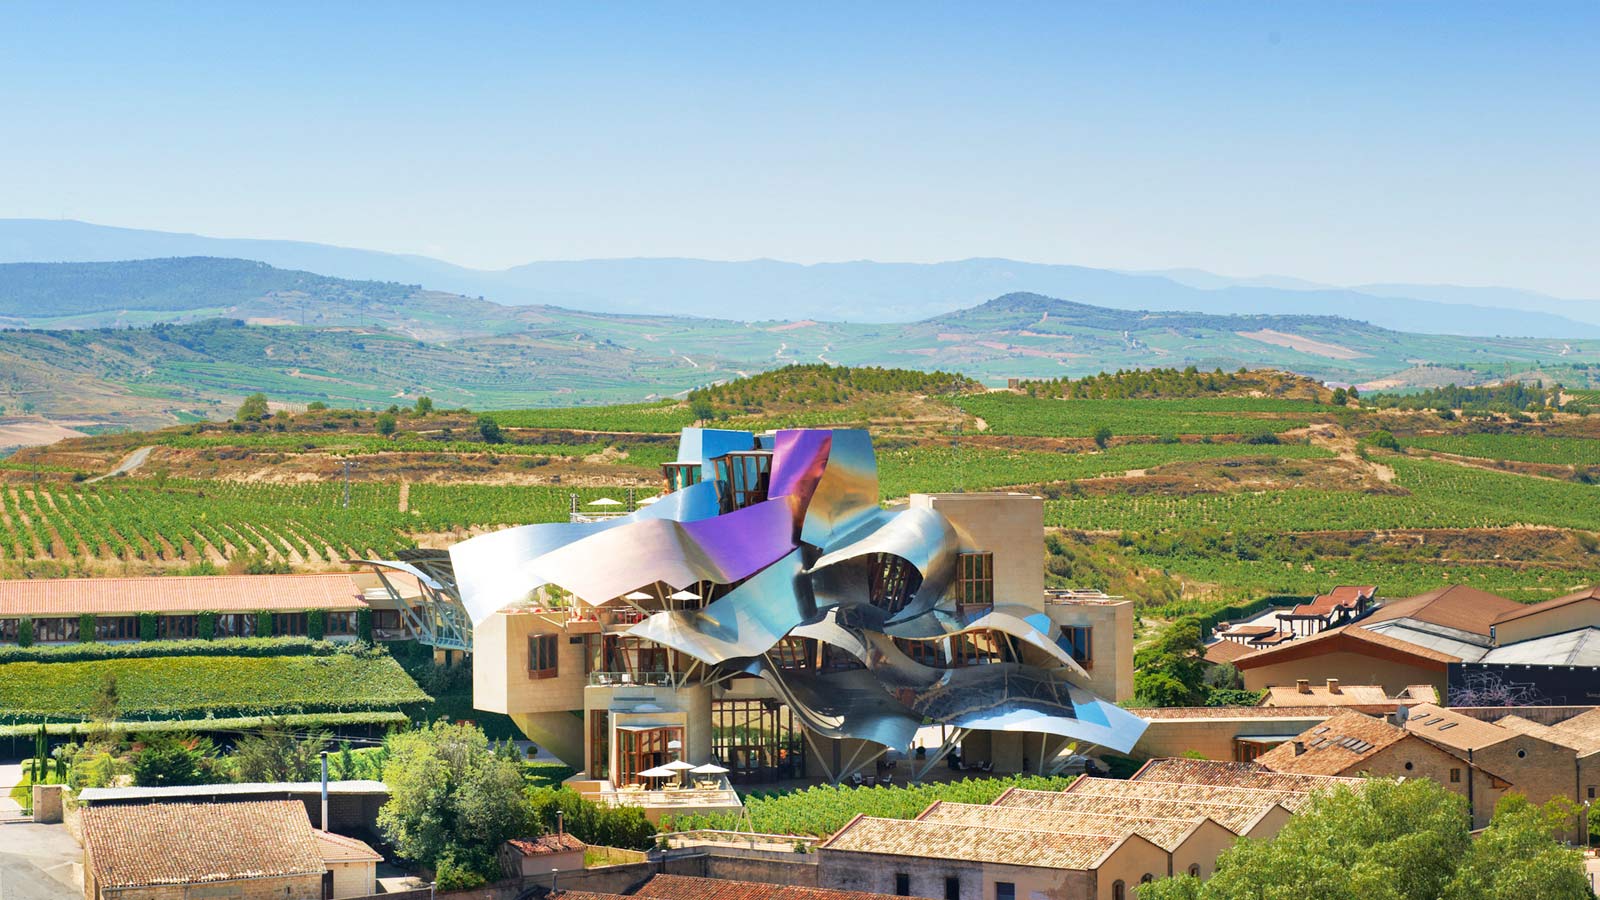 Lire la suite à propos de l’article Bilbao et Marqués de Riscal à l’architecture d’avant-garde